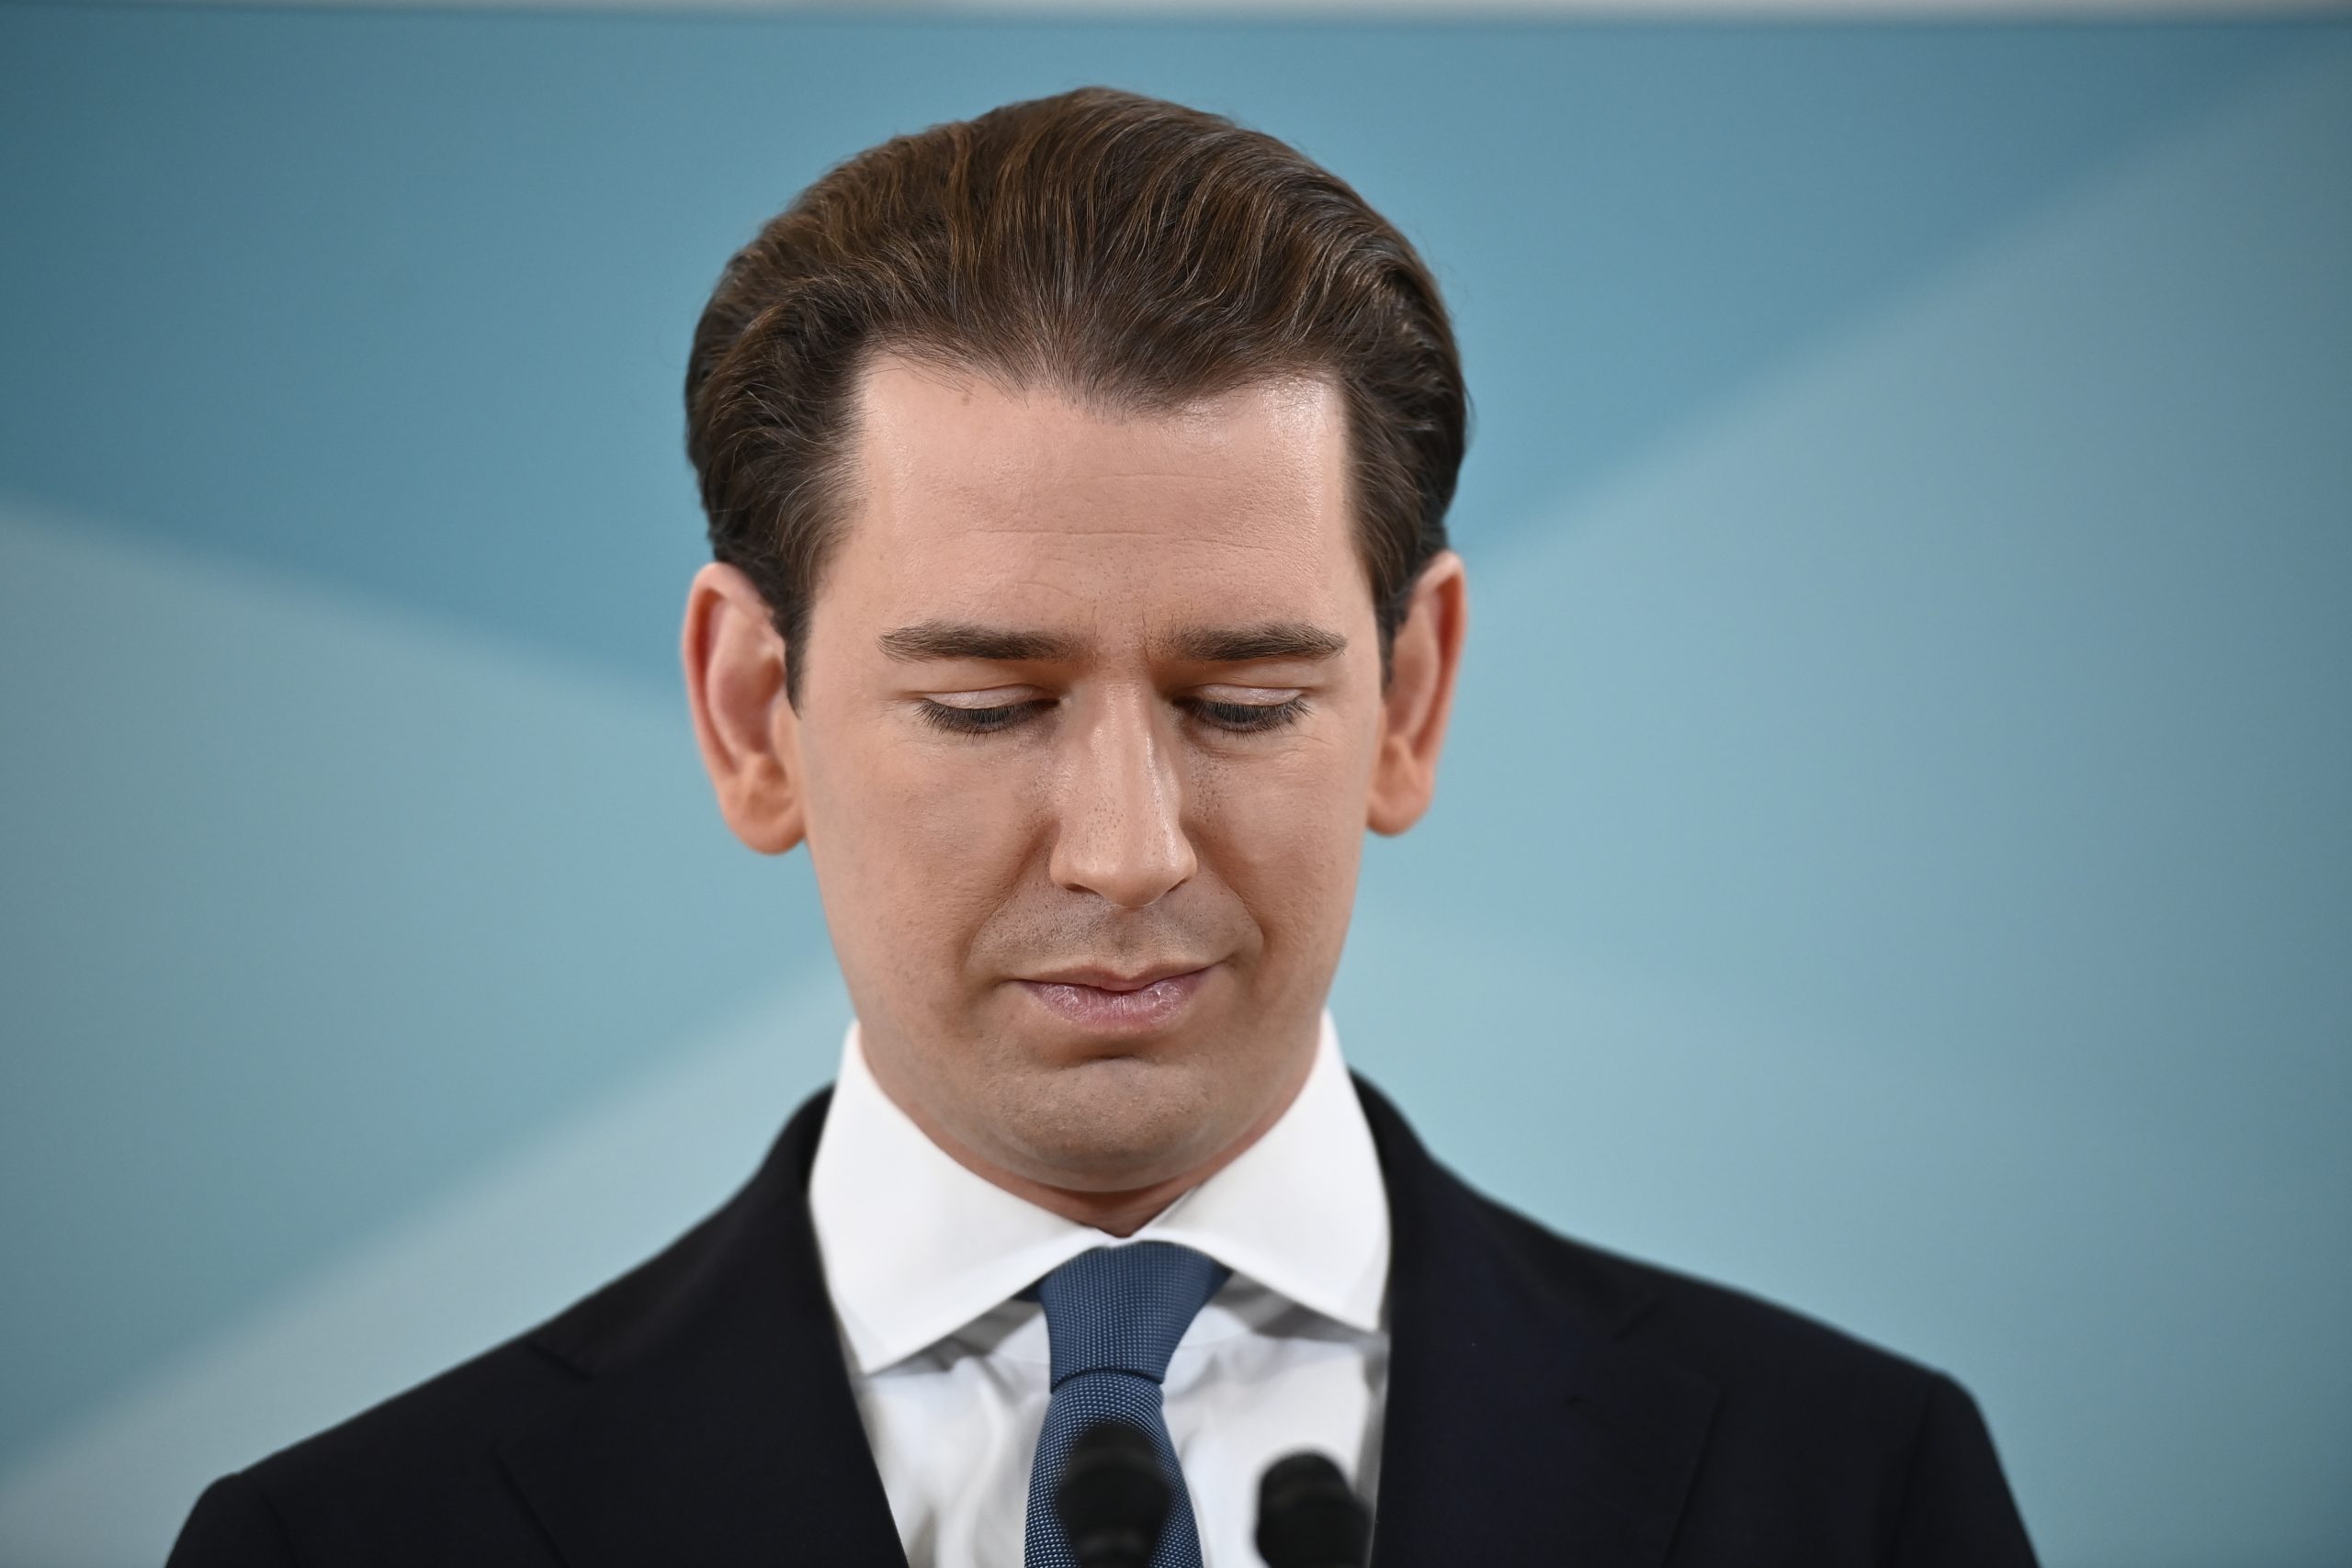 因卷入贪腐案辞职 奥地利前总理库尔茨退出政坛